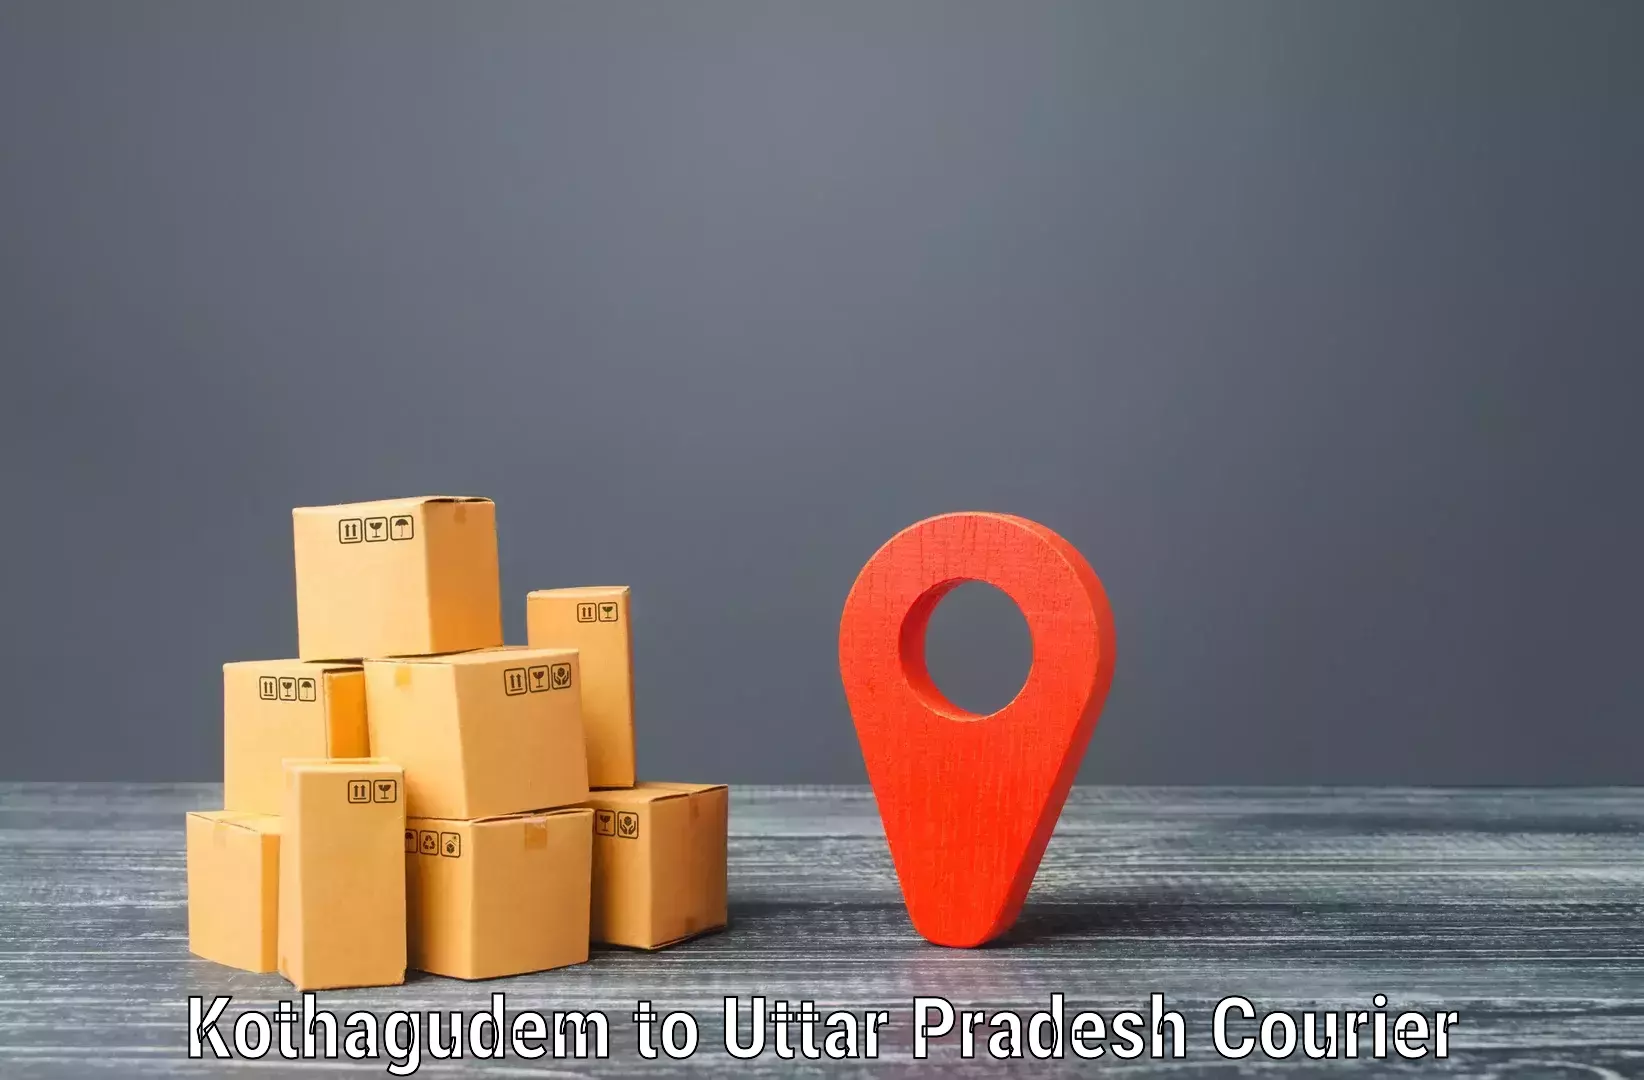 On-demand delivery Kothagudem to Gonda